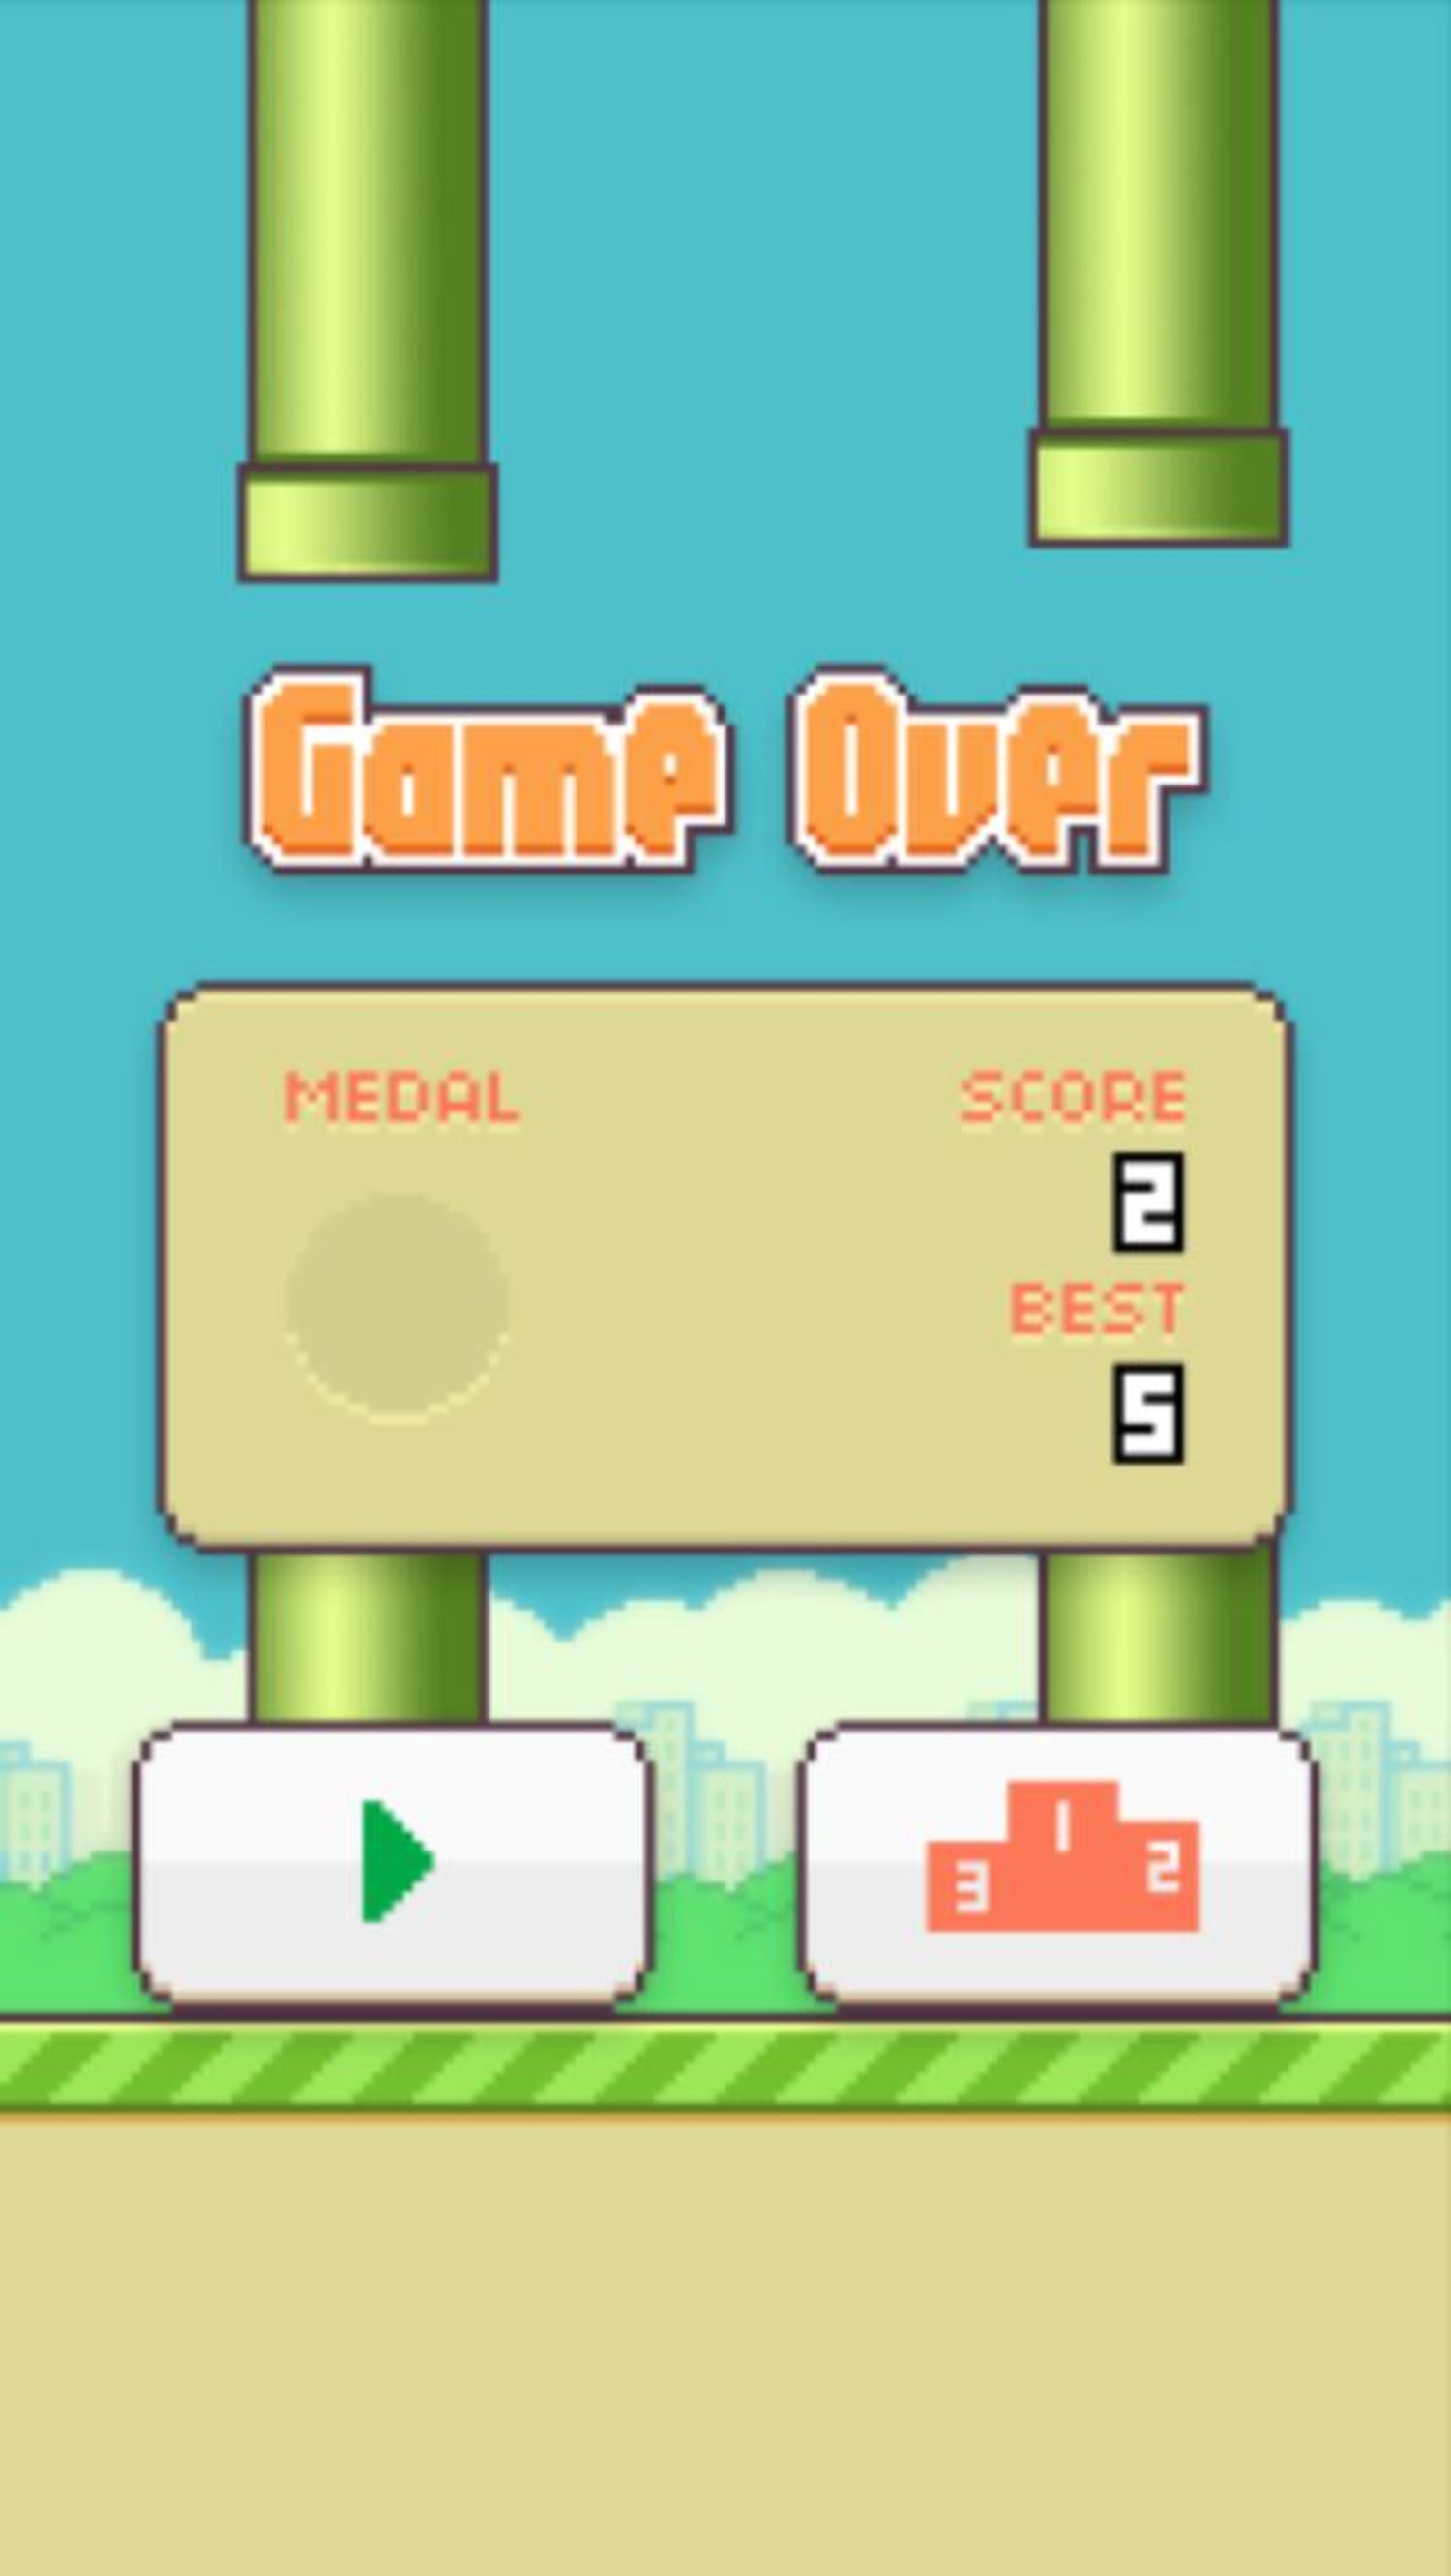 So I Created Flappy Bird 2 